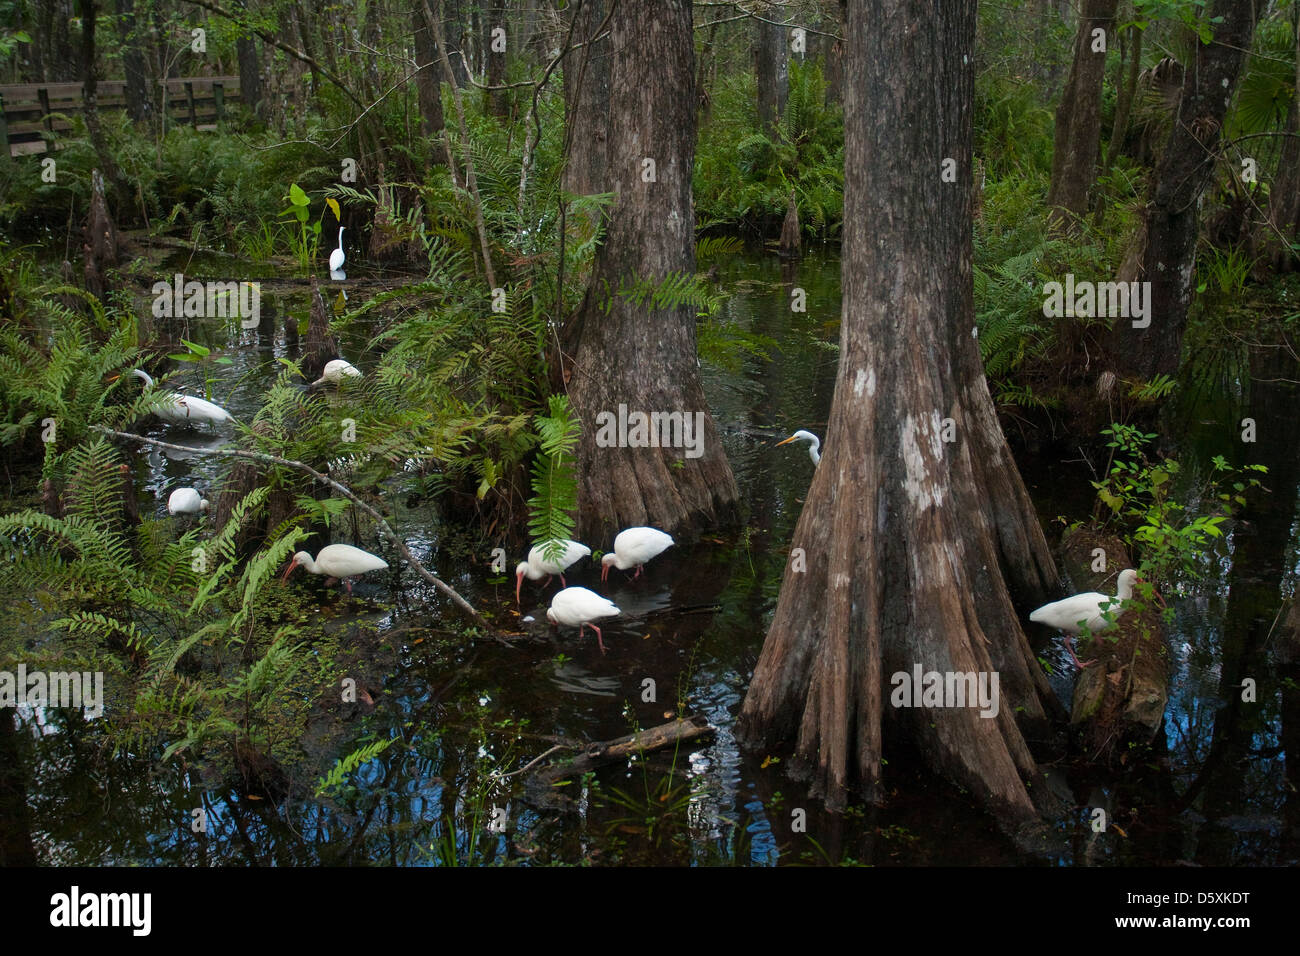 IBIS blanc américain et grande aigrette alimentation dans des marais, Six Mile Cypress Slough Preserve, Fort Myers, Floride, USA. Banque D'Images